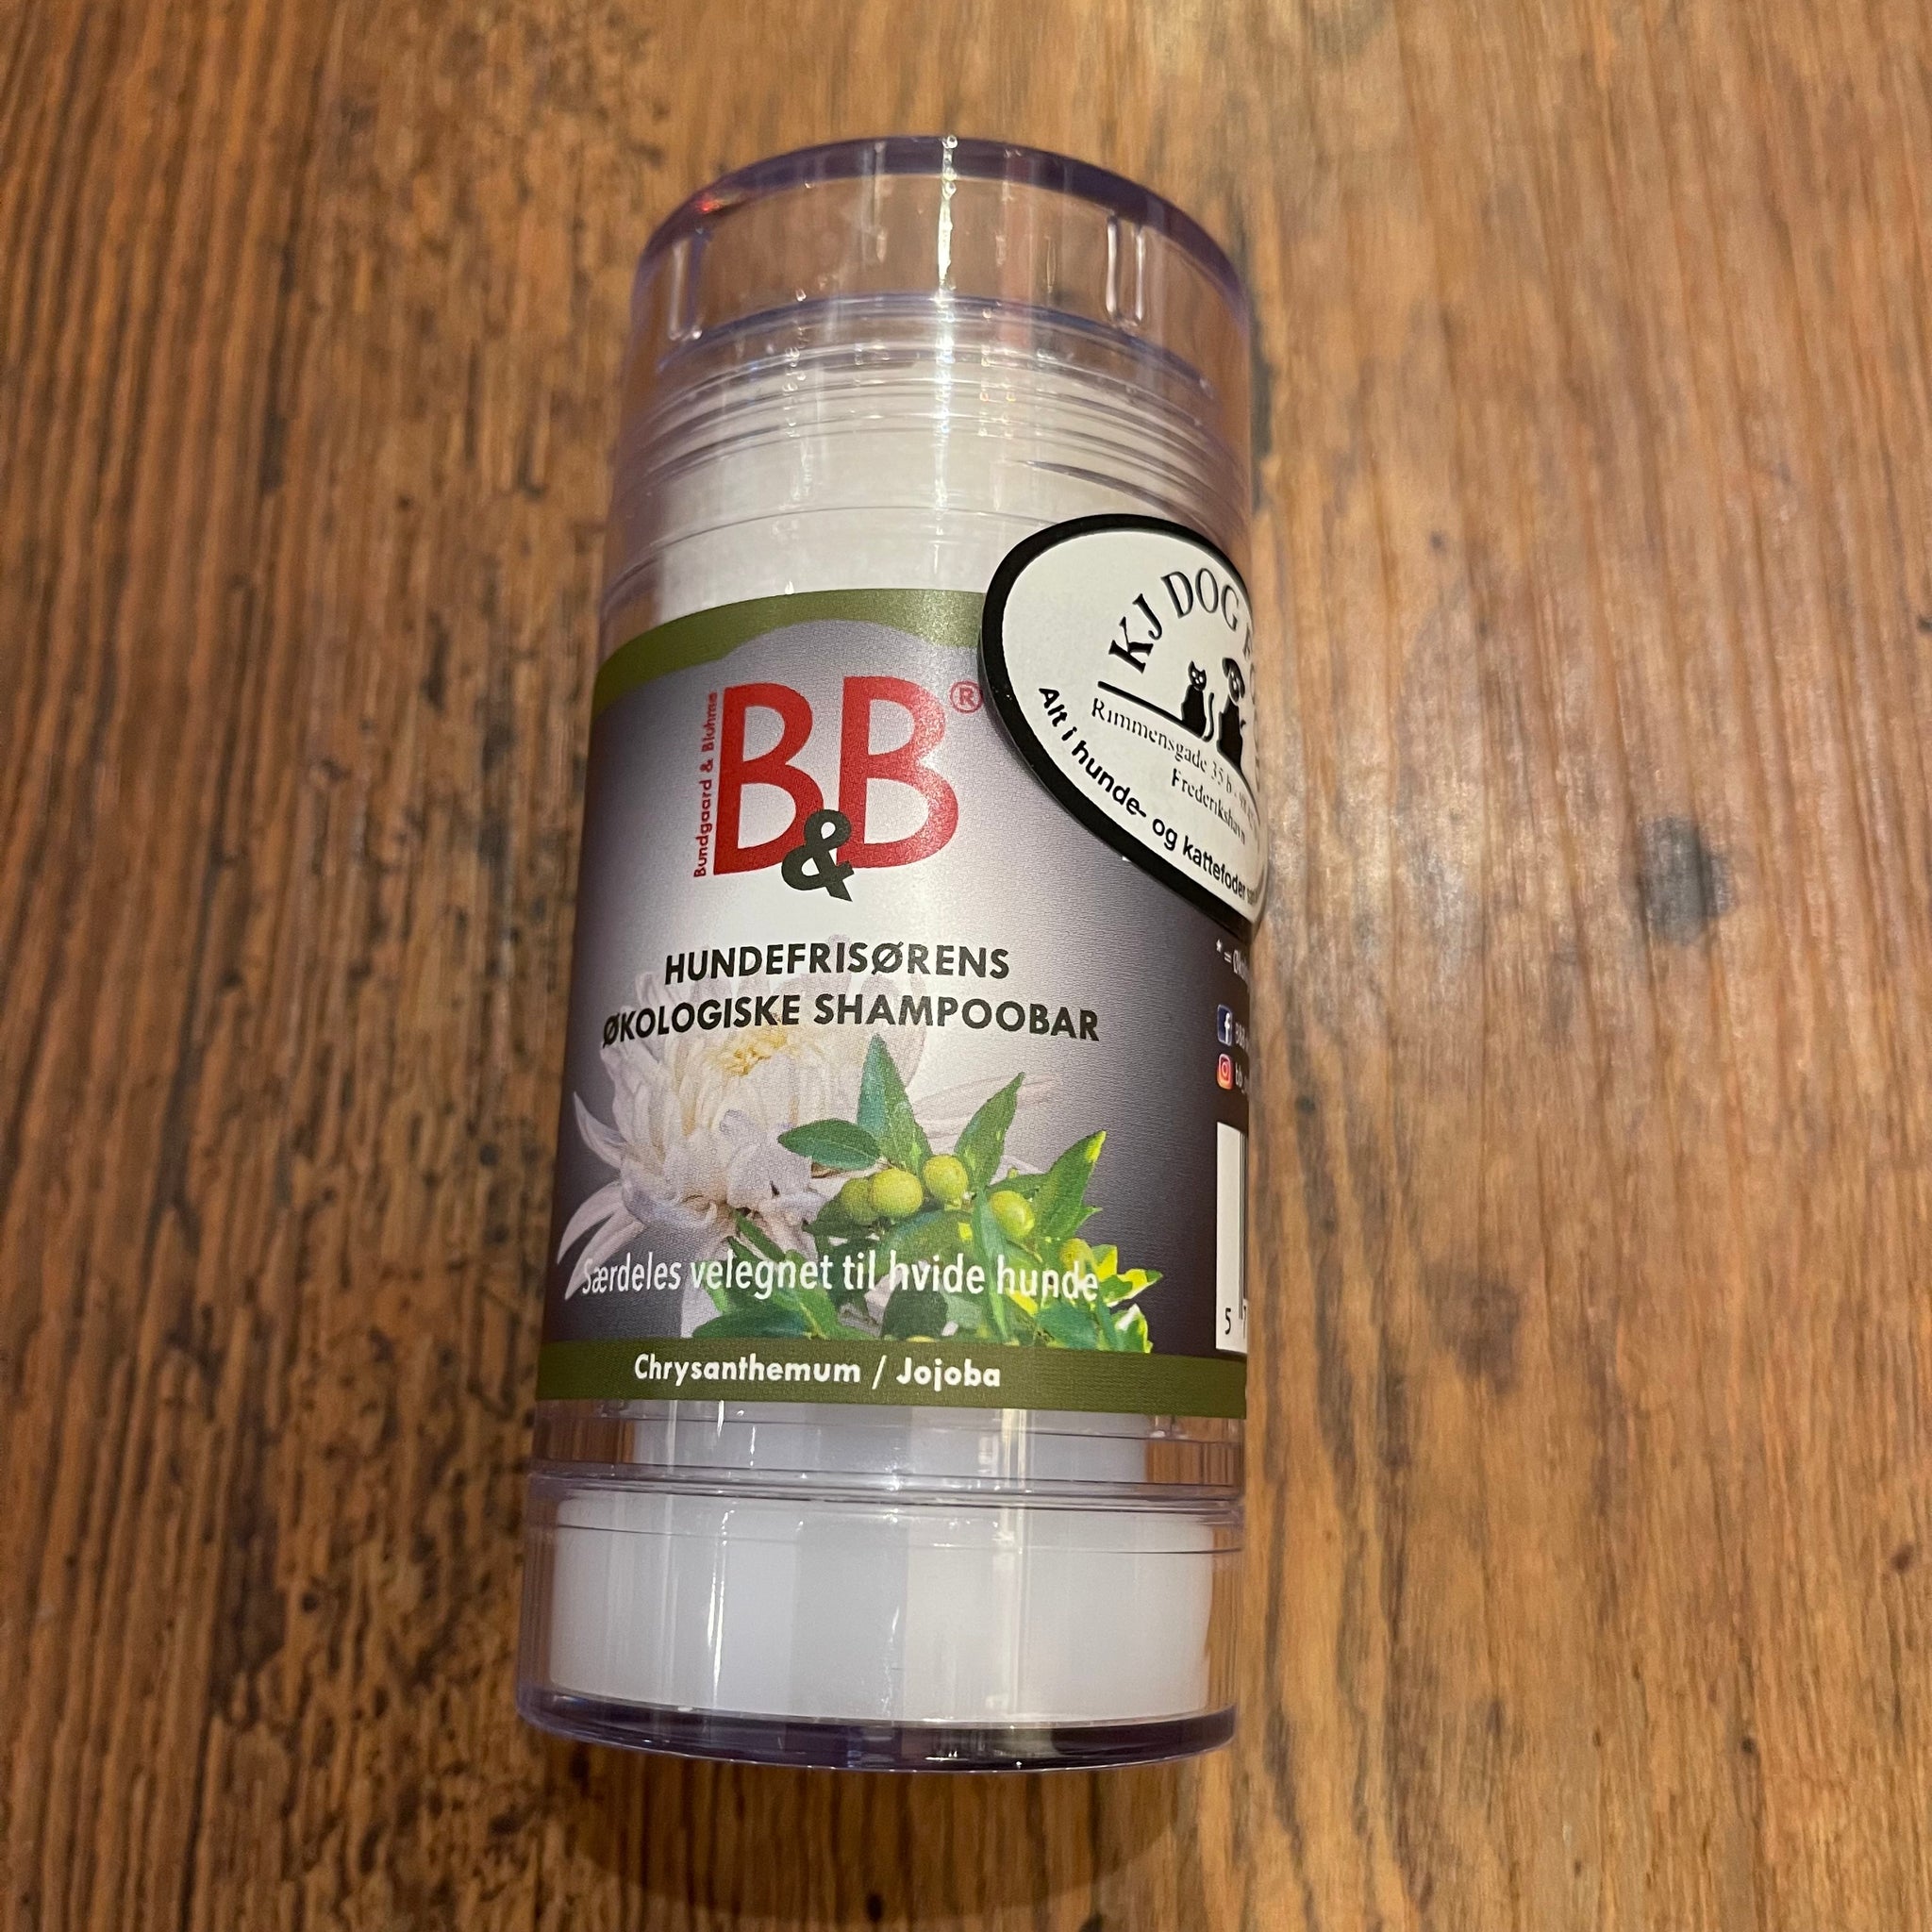 B&B Økologisk Hundeshampoo Stick - velegnet til hvide hunde